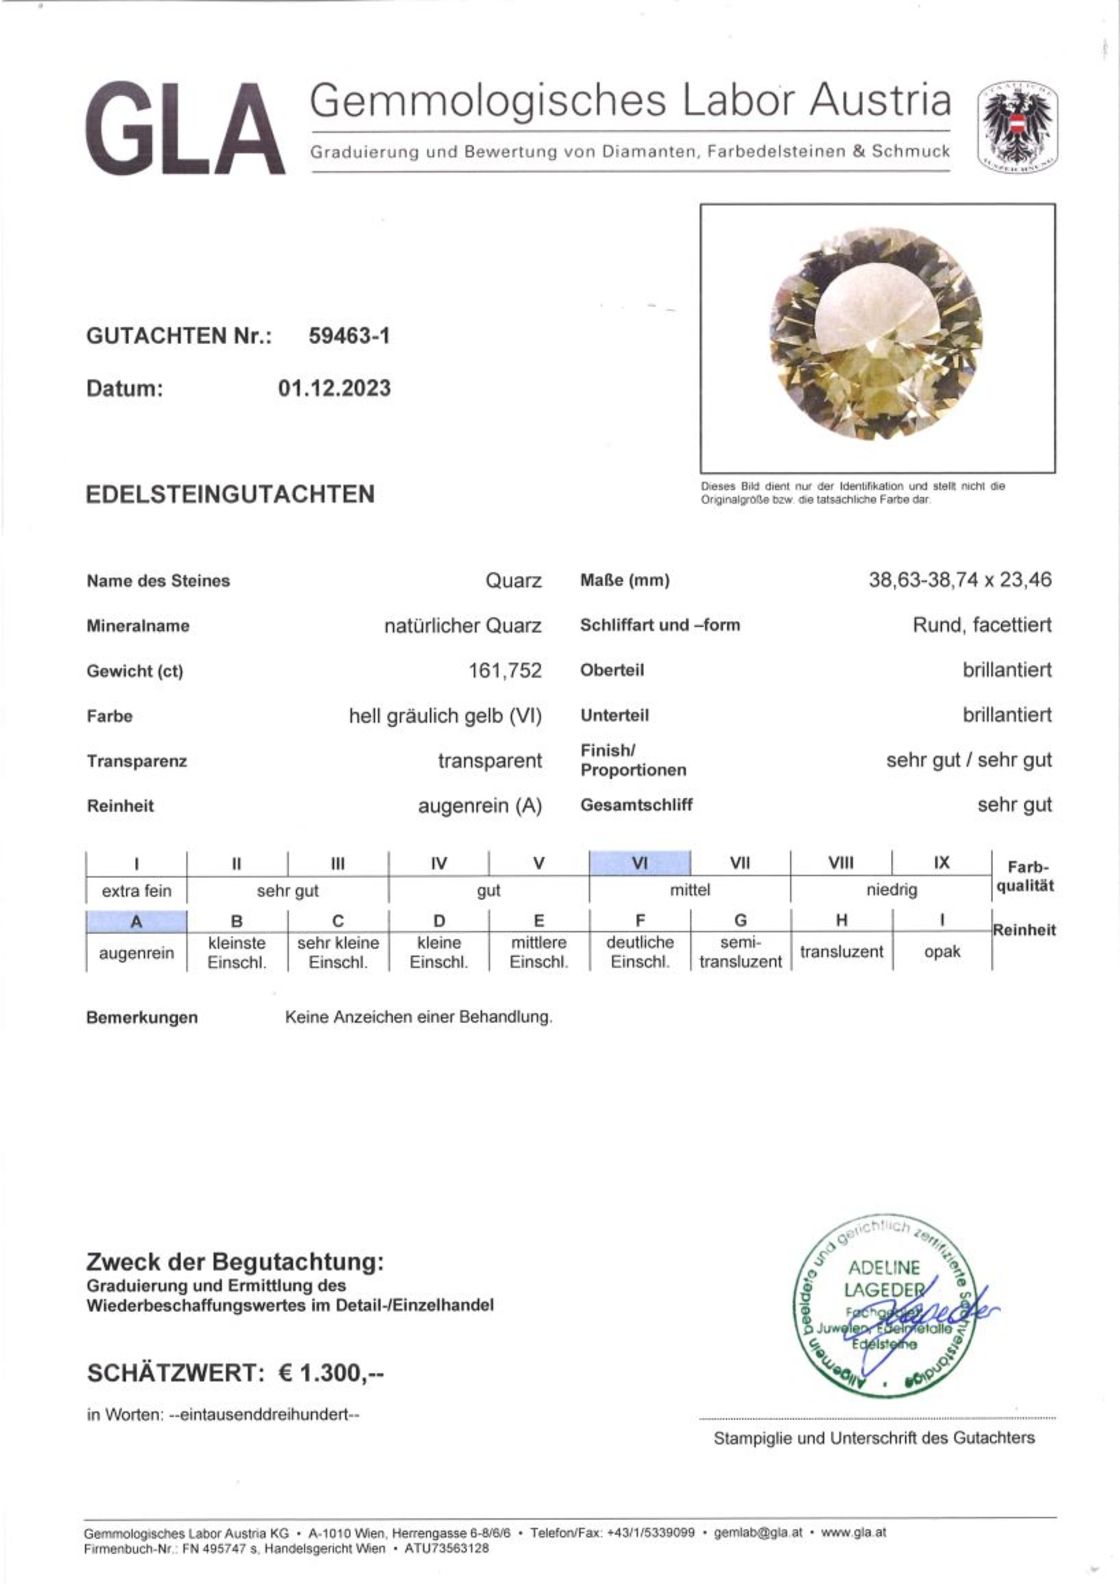 Quarz Design-Rundschliff gräulich zartgelb unbehandelt 161,752 ct